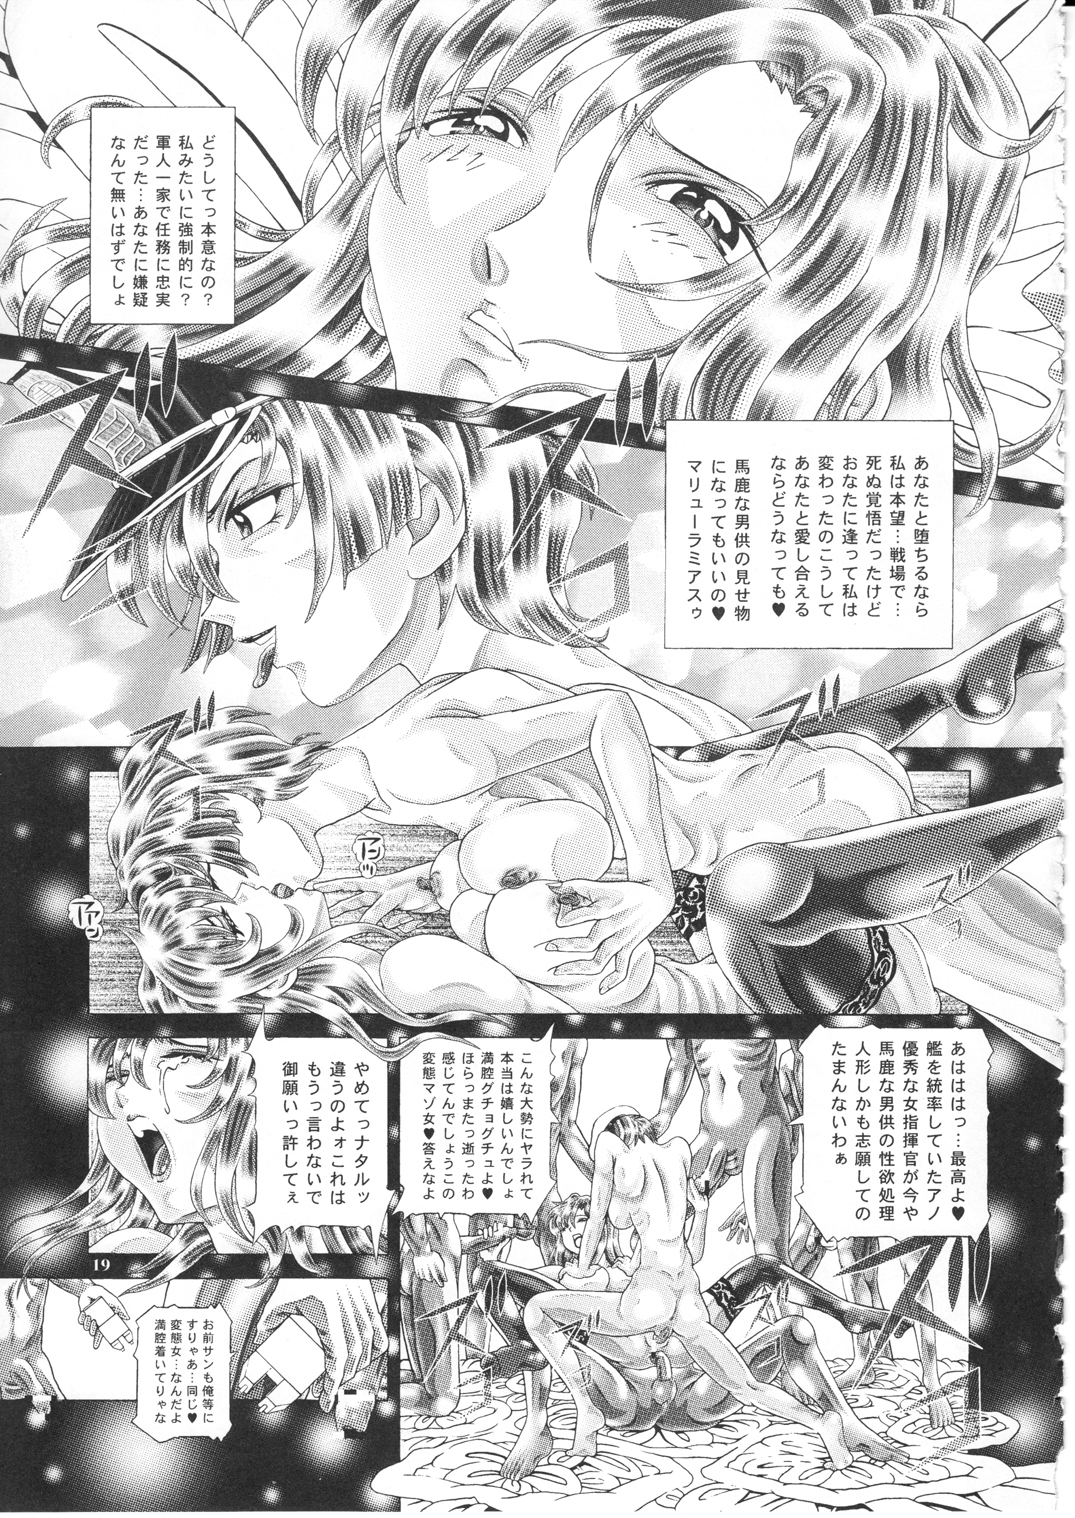 [Kaki no Boo (Kakinomoto Utamaro)] RANDOM NUDE Vol.1.29 [MURRUE RAMIUS] (Gundam Seed) [柿ノ房 (柿ノ本歌麿)] 女性兵士ランダムヌード 第壱.二九段 マリューラミアス遍 (ガンダムSEED)